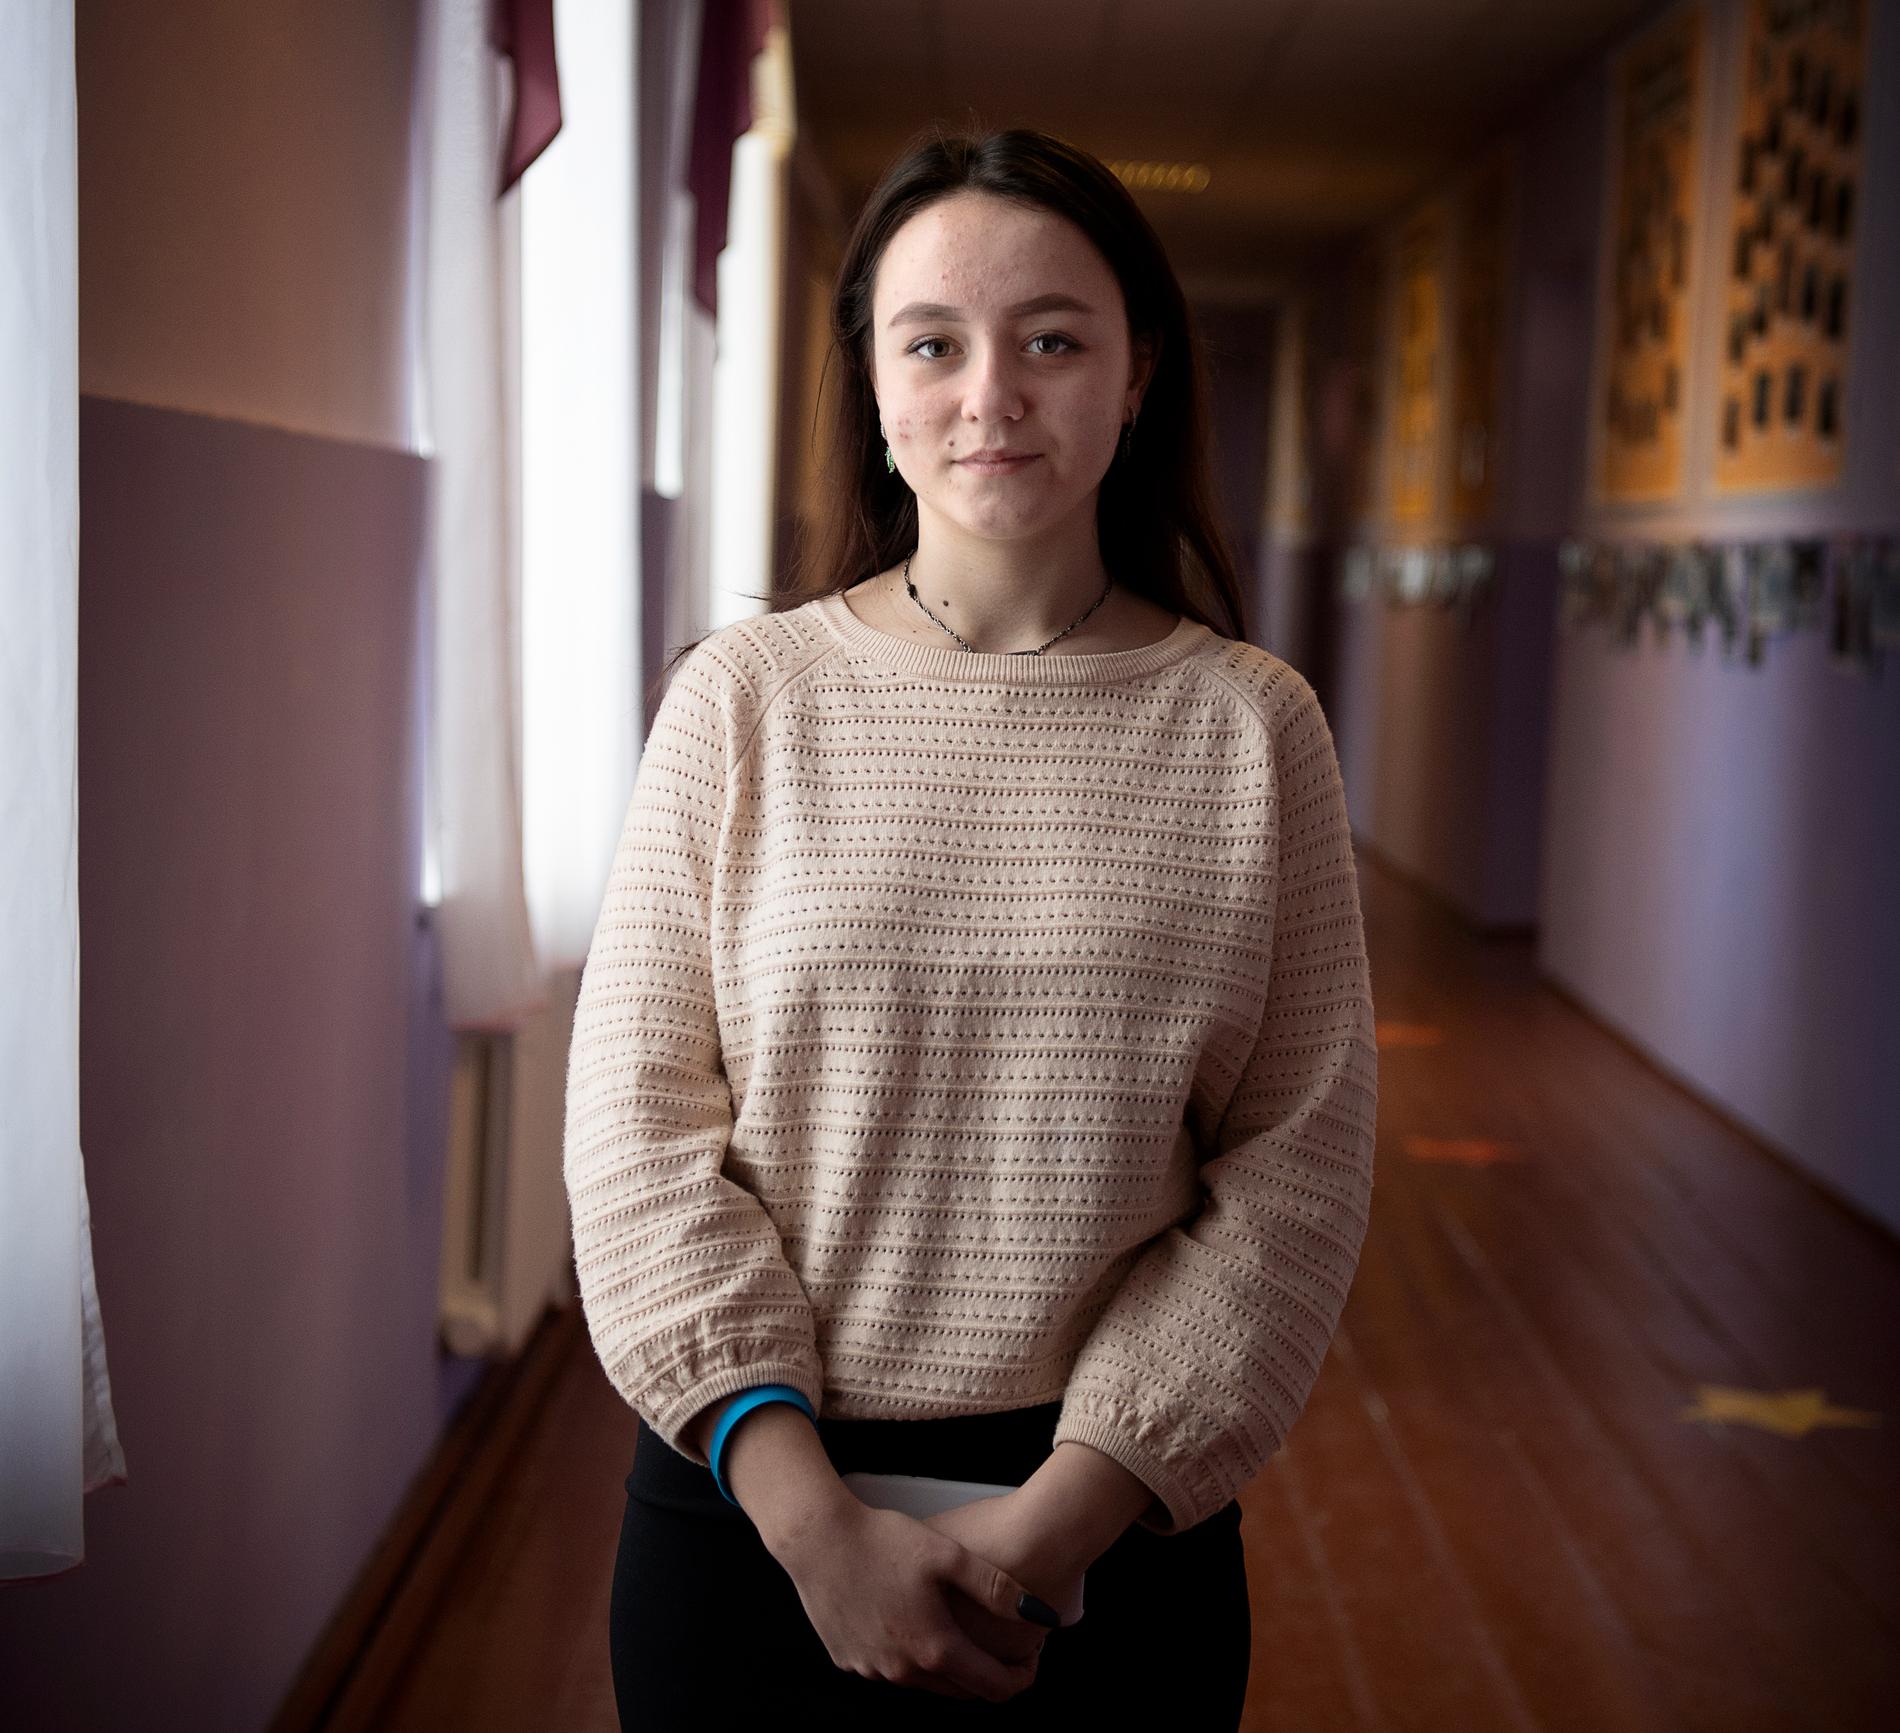 Viktoria Rozsudovska är en glad tjej på 16 år. Normalt är hon engagerad i volleyboll – men nu stjäl hotet om krig allt fokus.